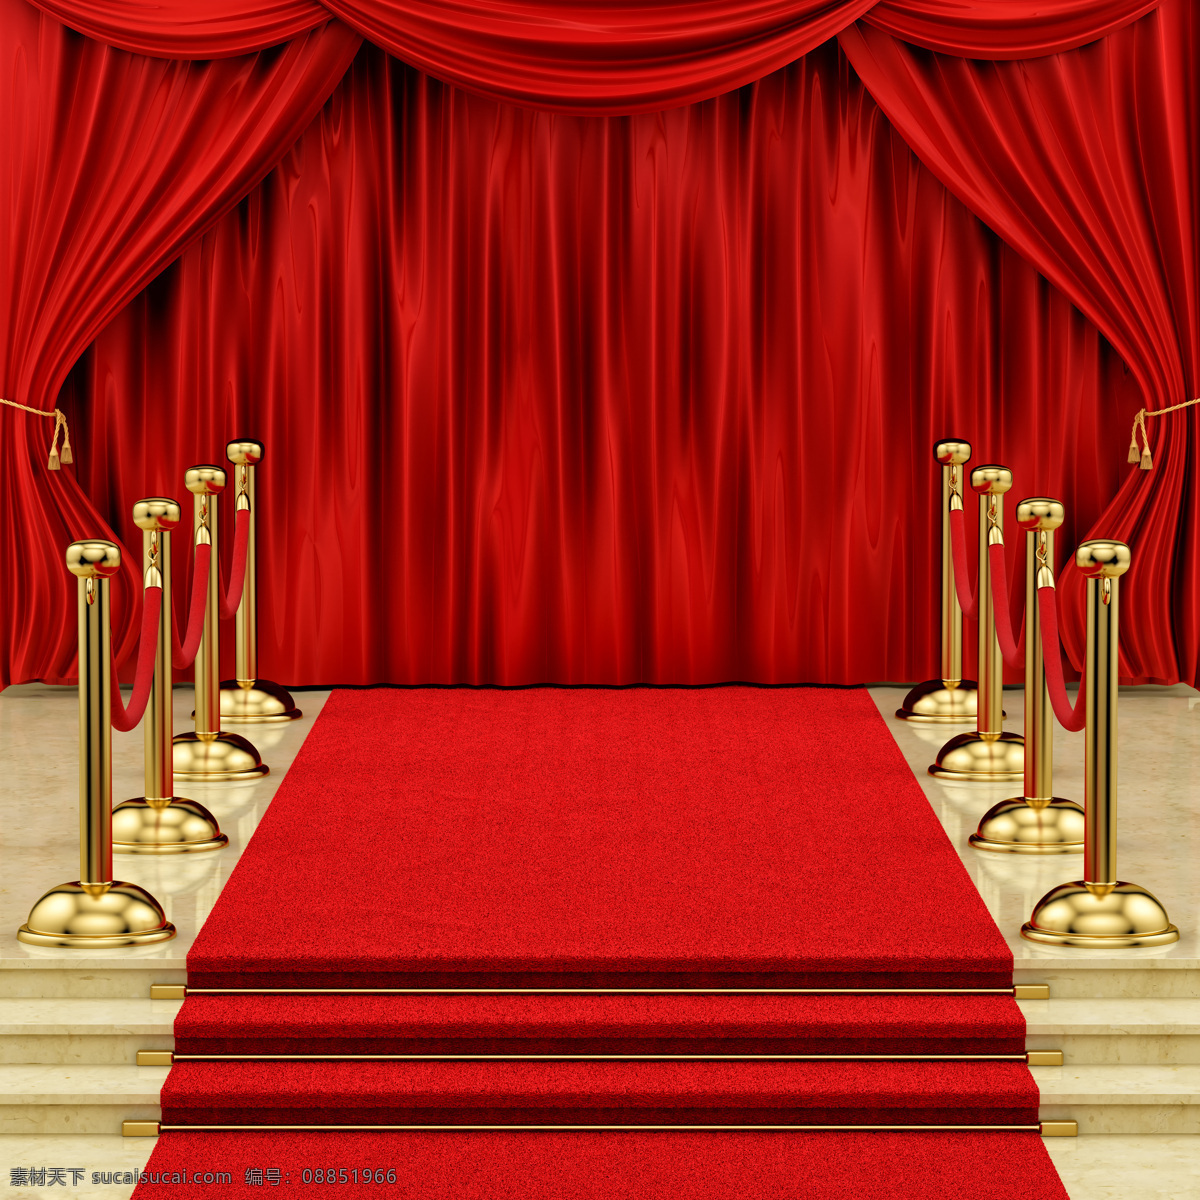 舞台 背景 红 地毯 红地毯 幕布 帷幕 舞台背景 其他类别 生活百科